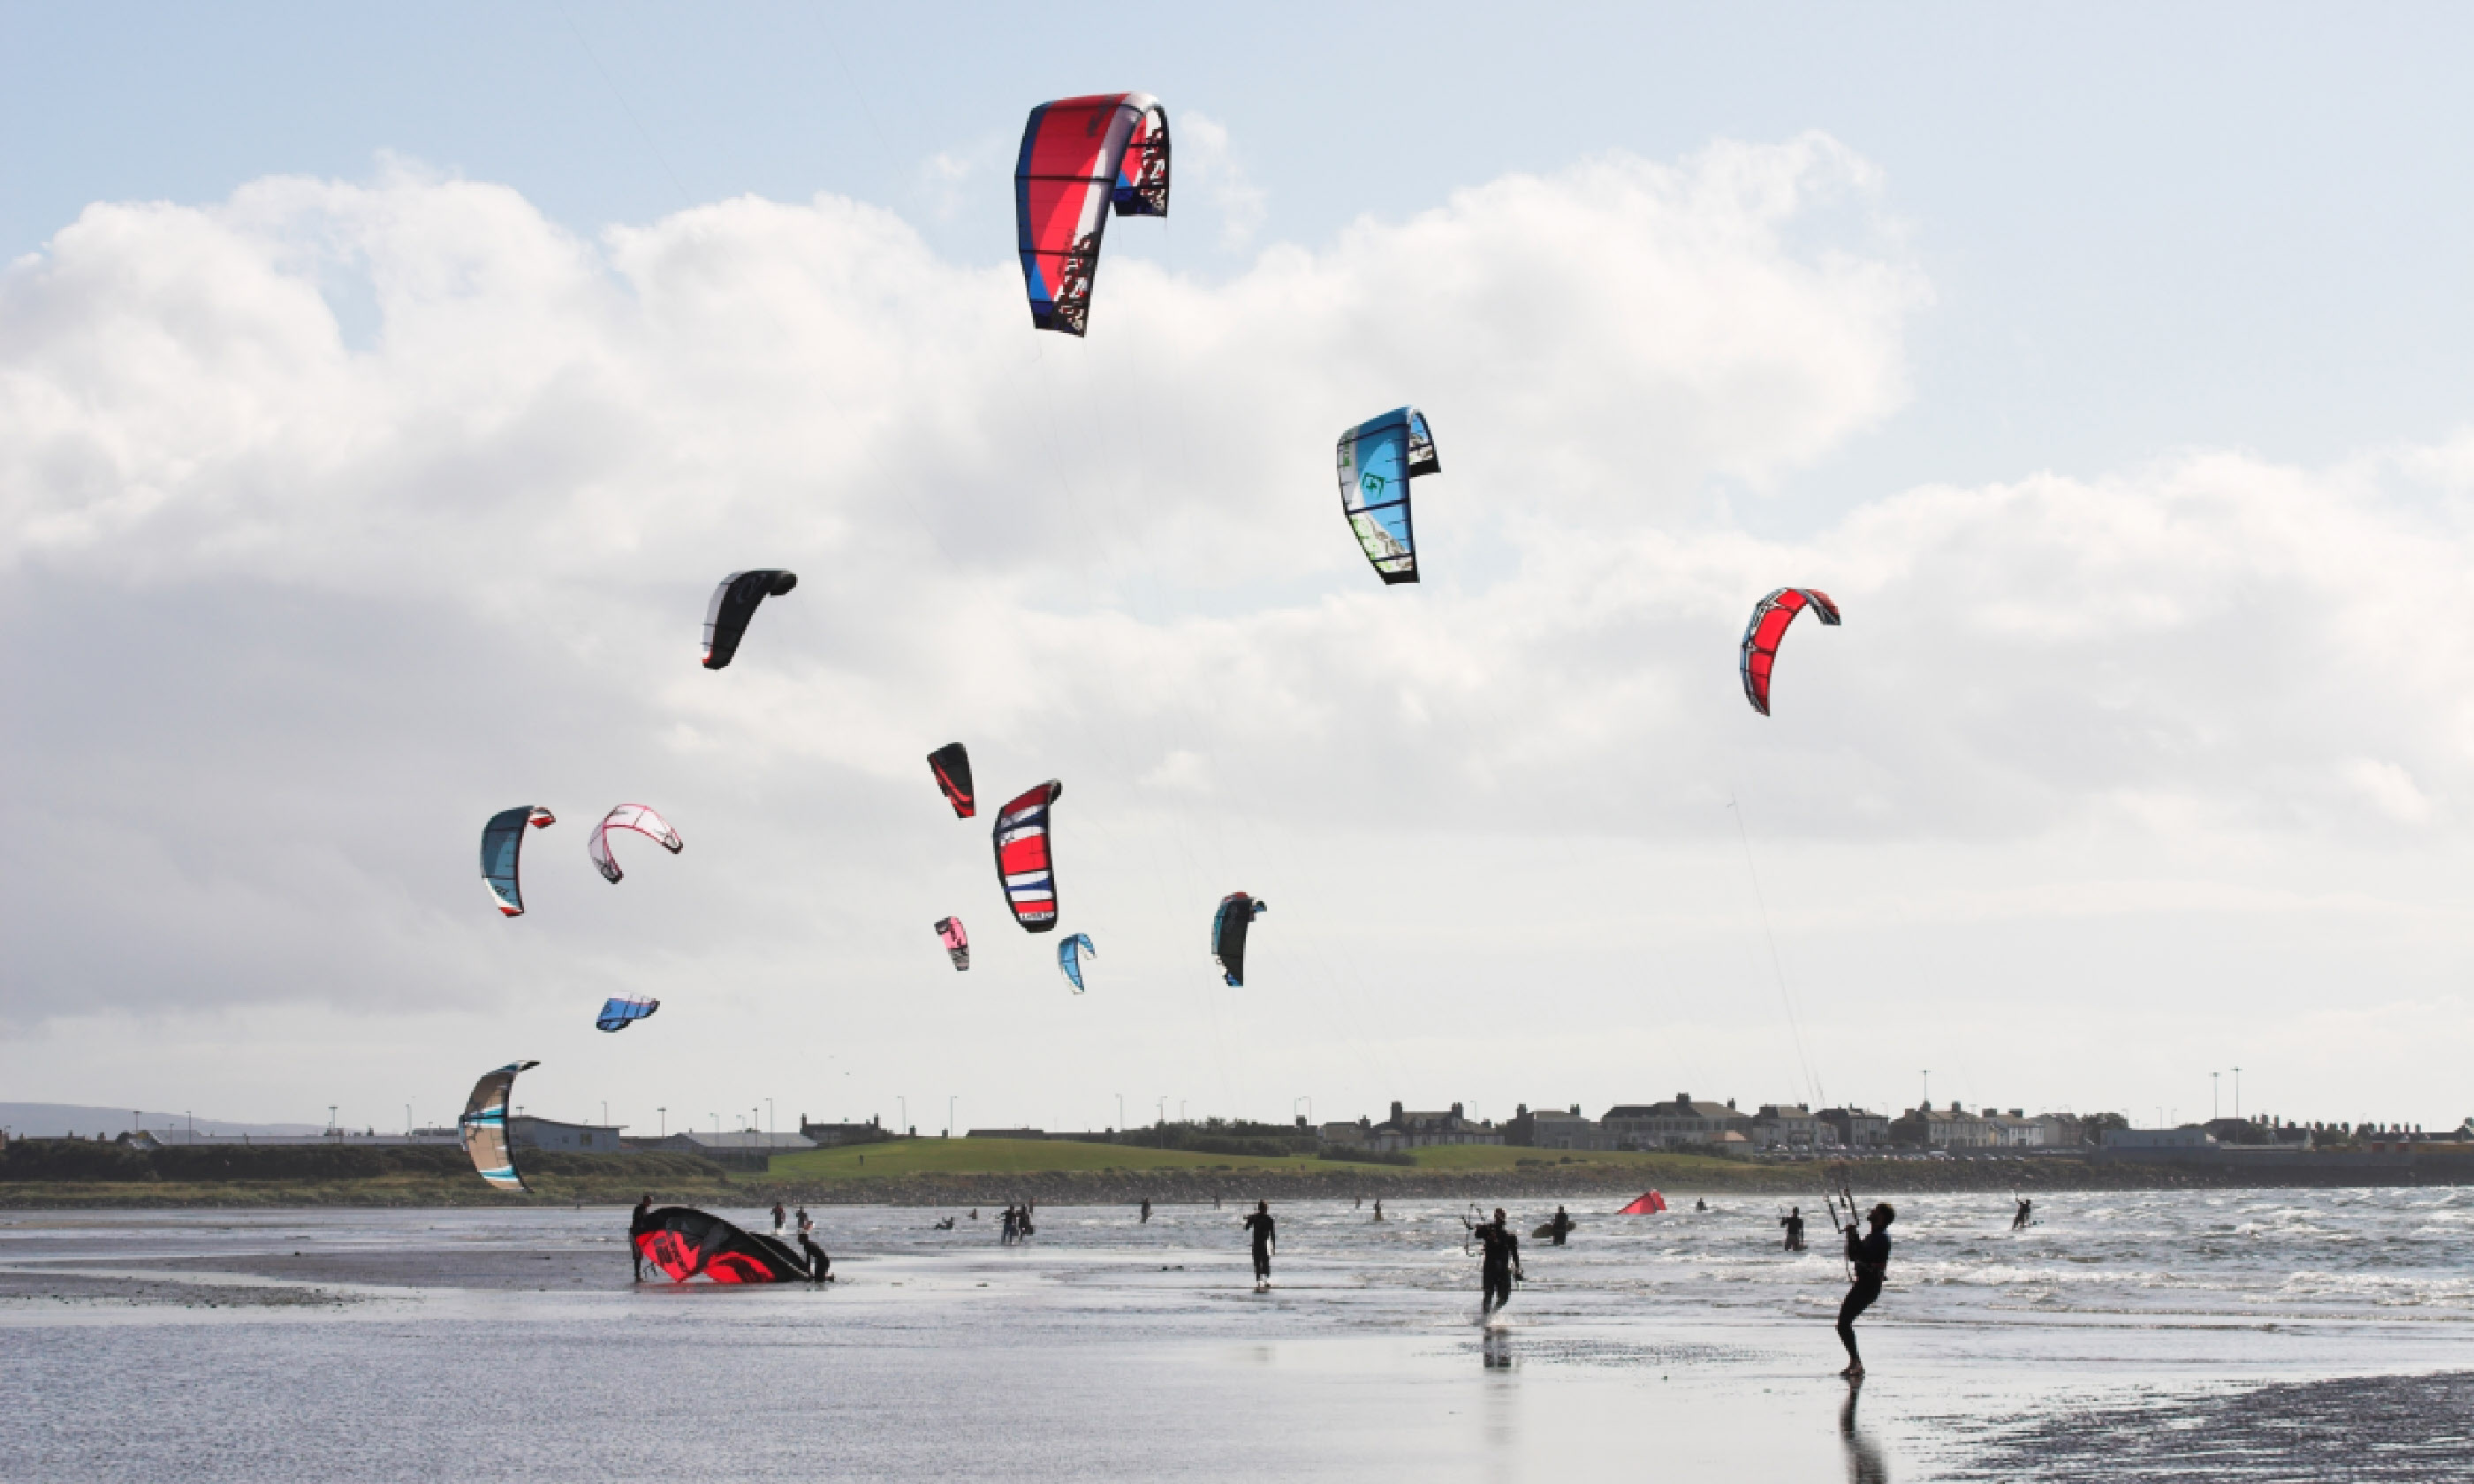 Kite surfing in Scotland (Shutterstock)